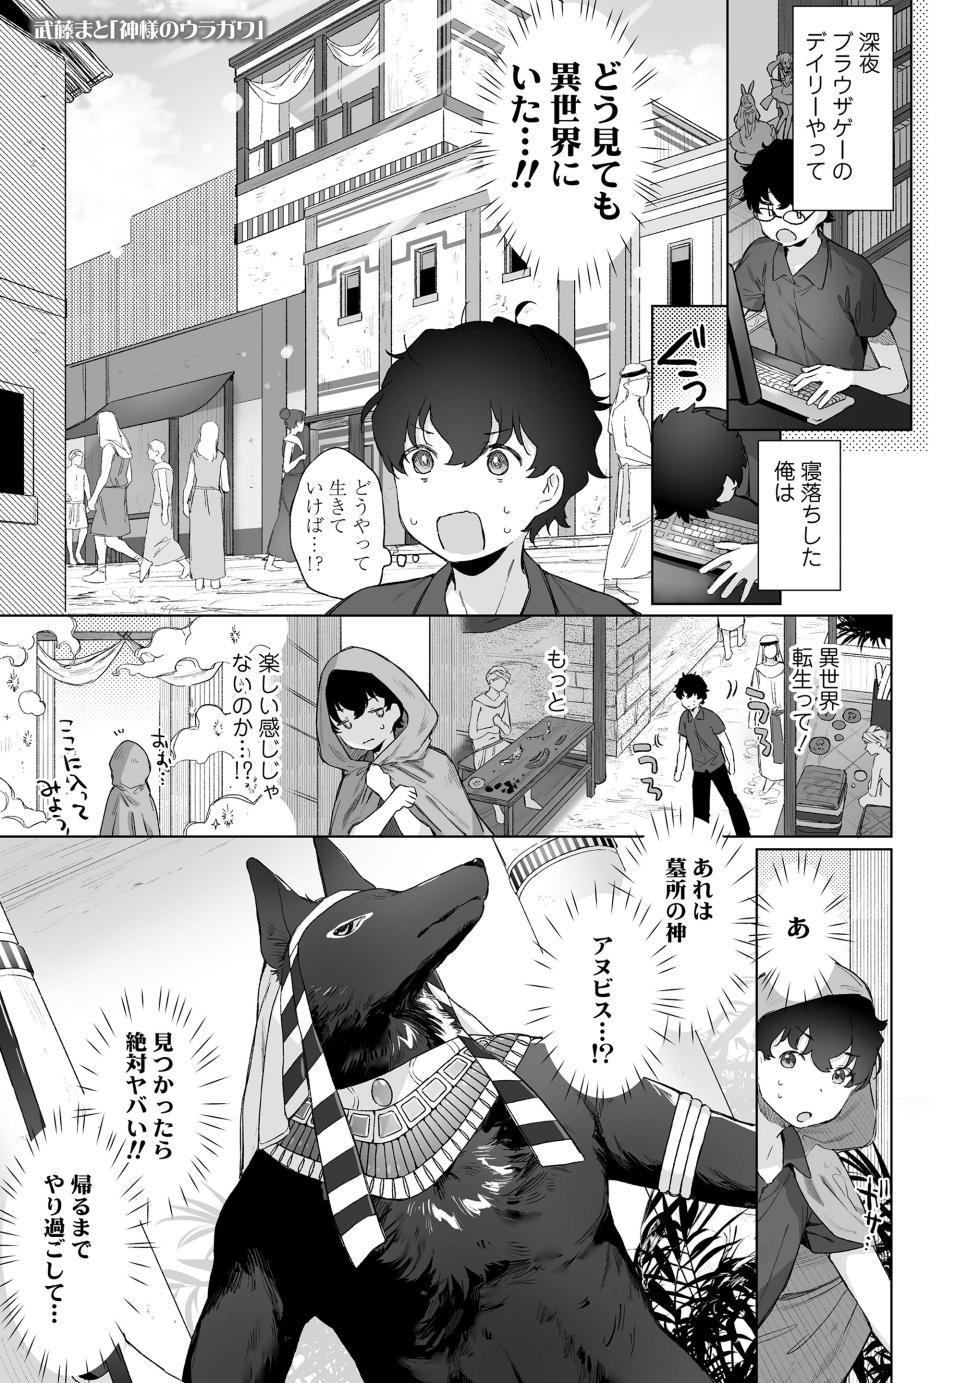 Towako 15 [Digital] - Page 3